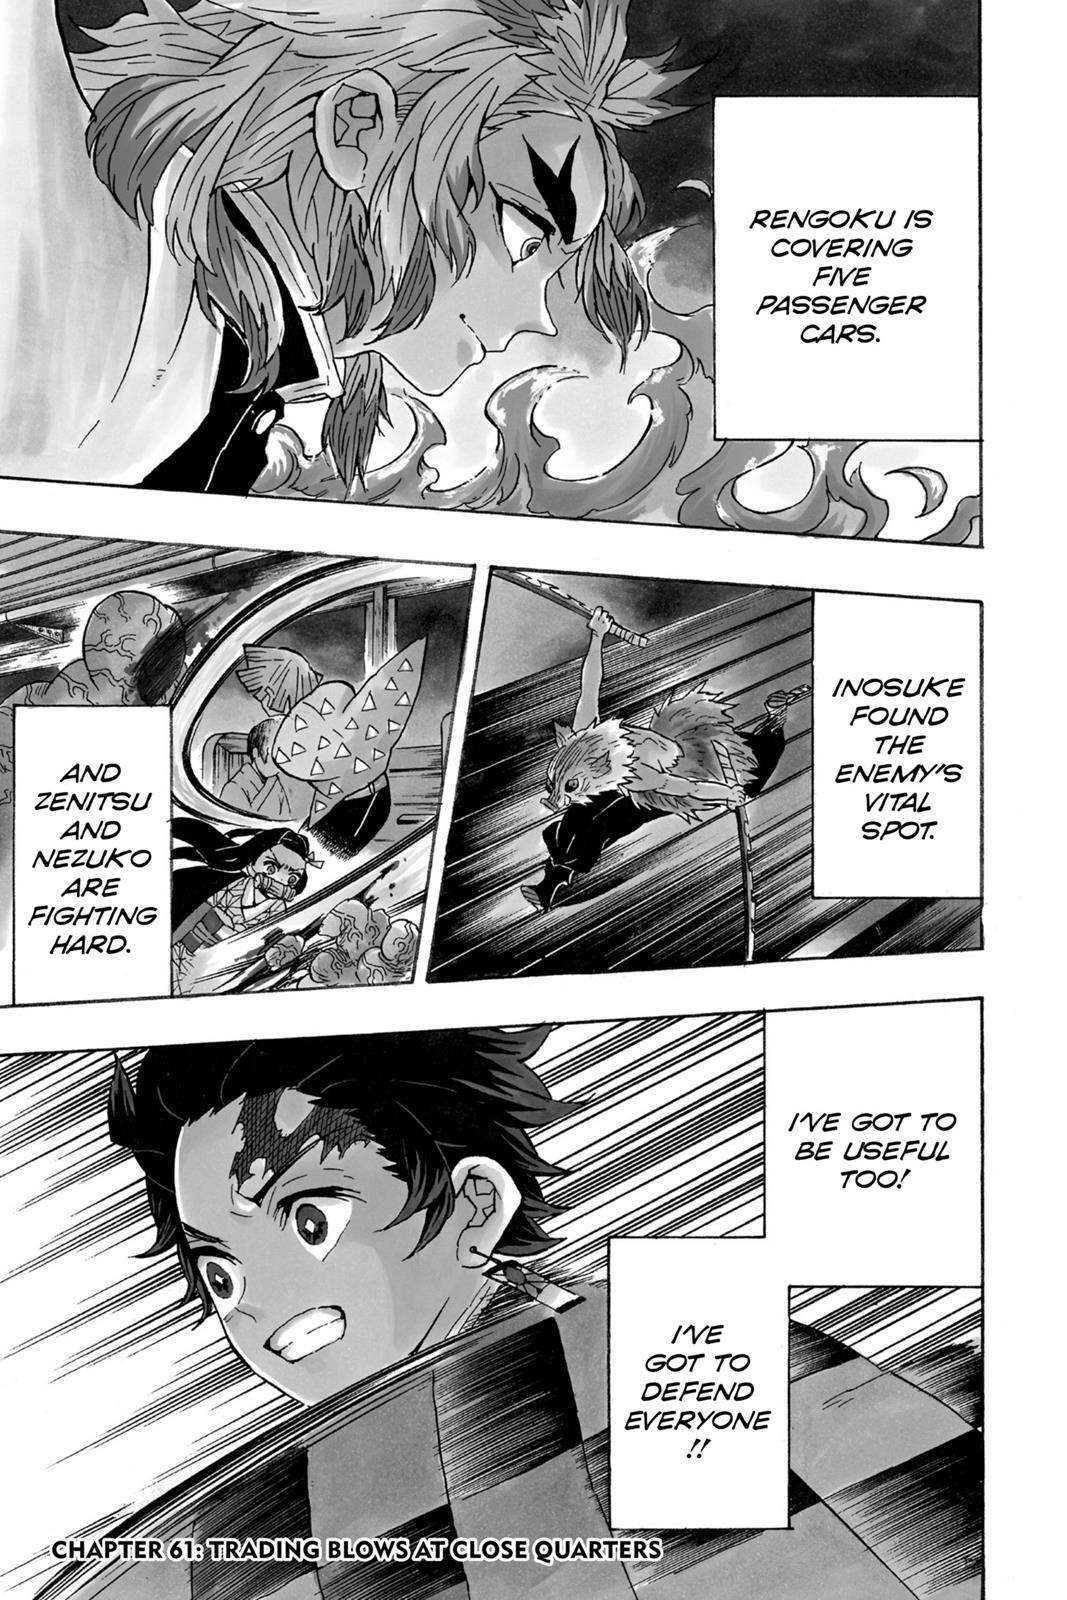 Demon Slayer Manga Manga Chapter - 61 - image 1